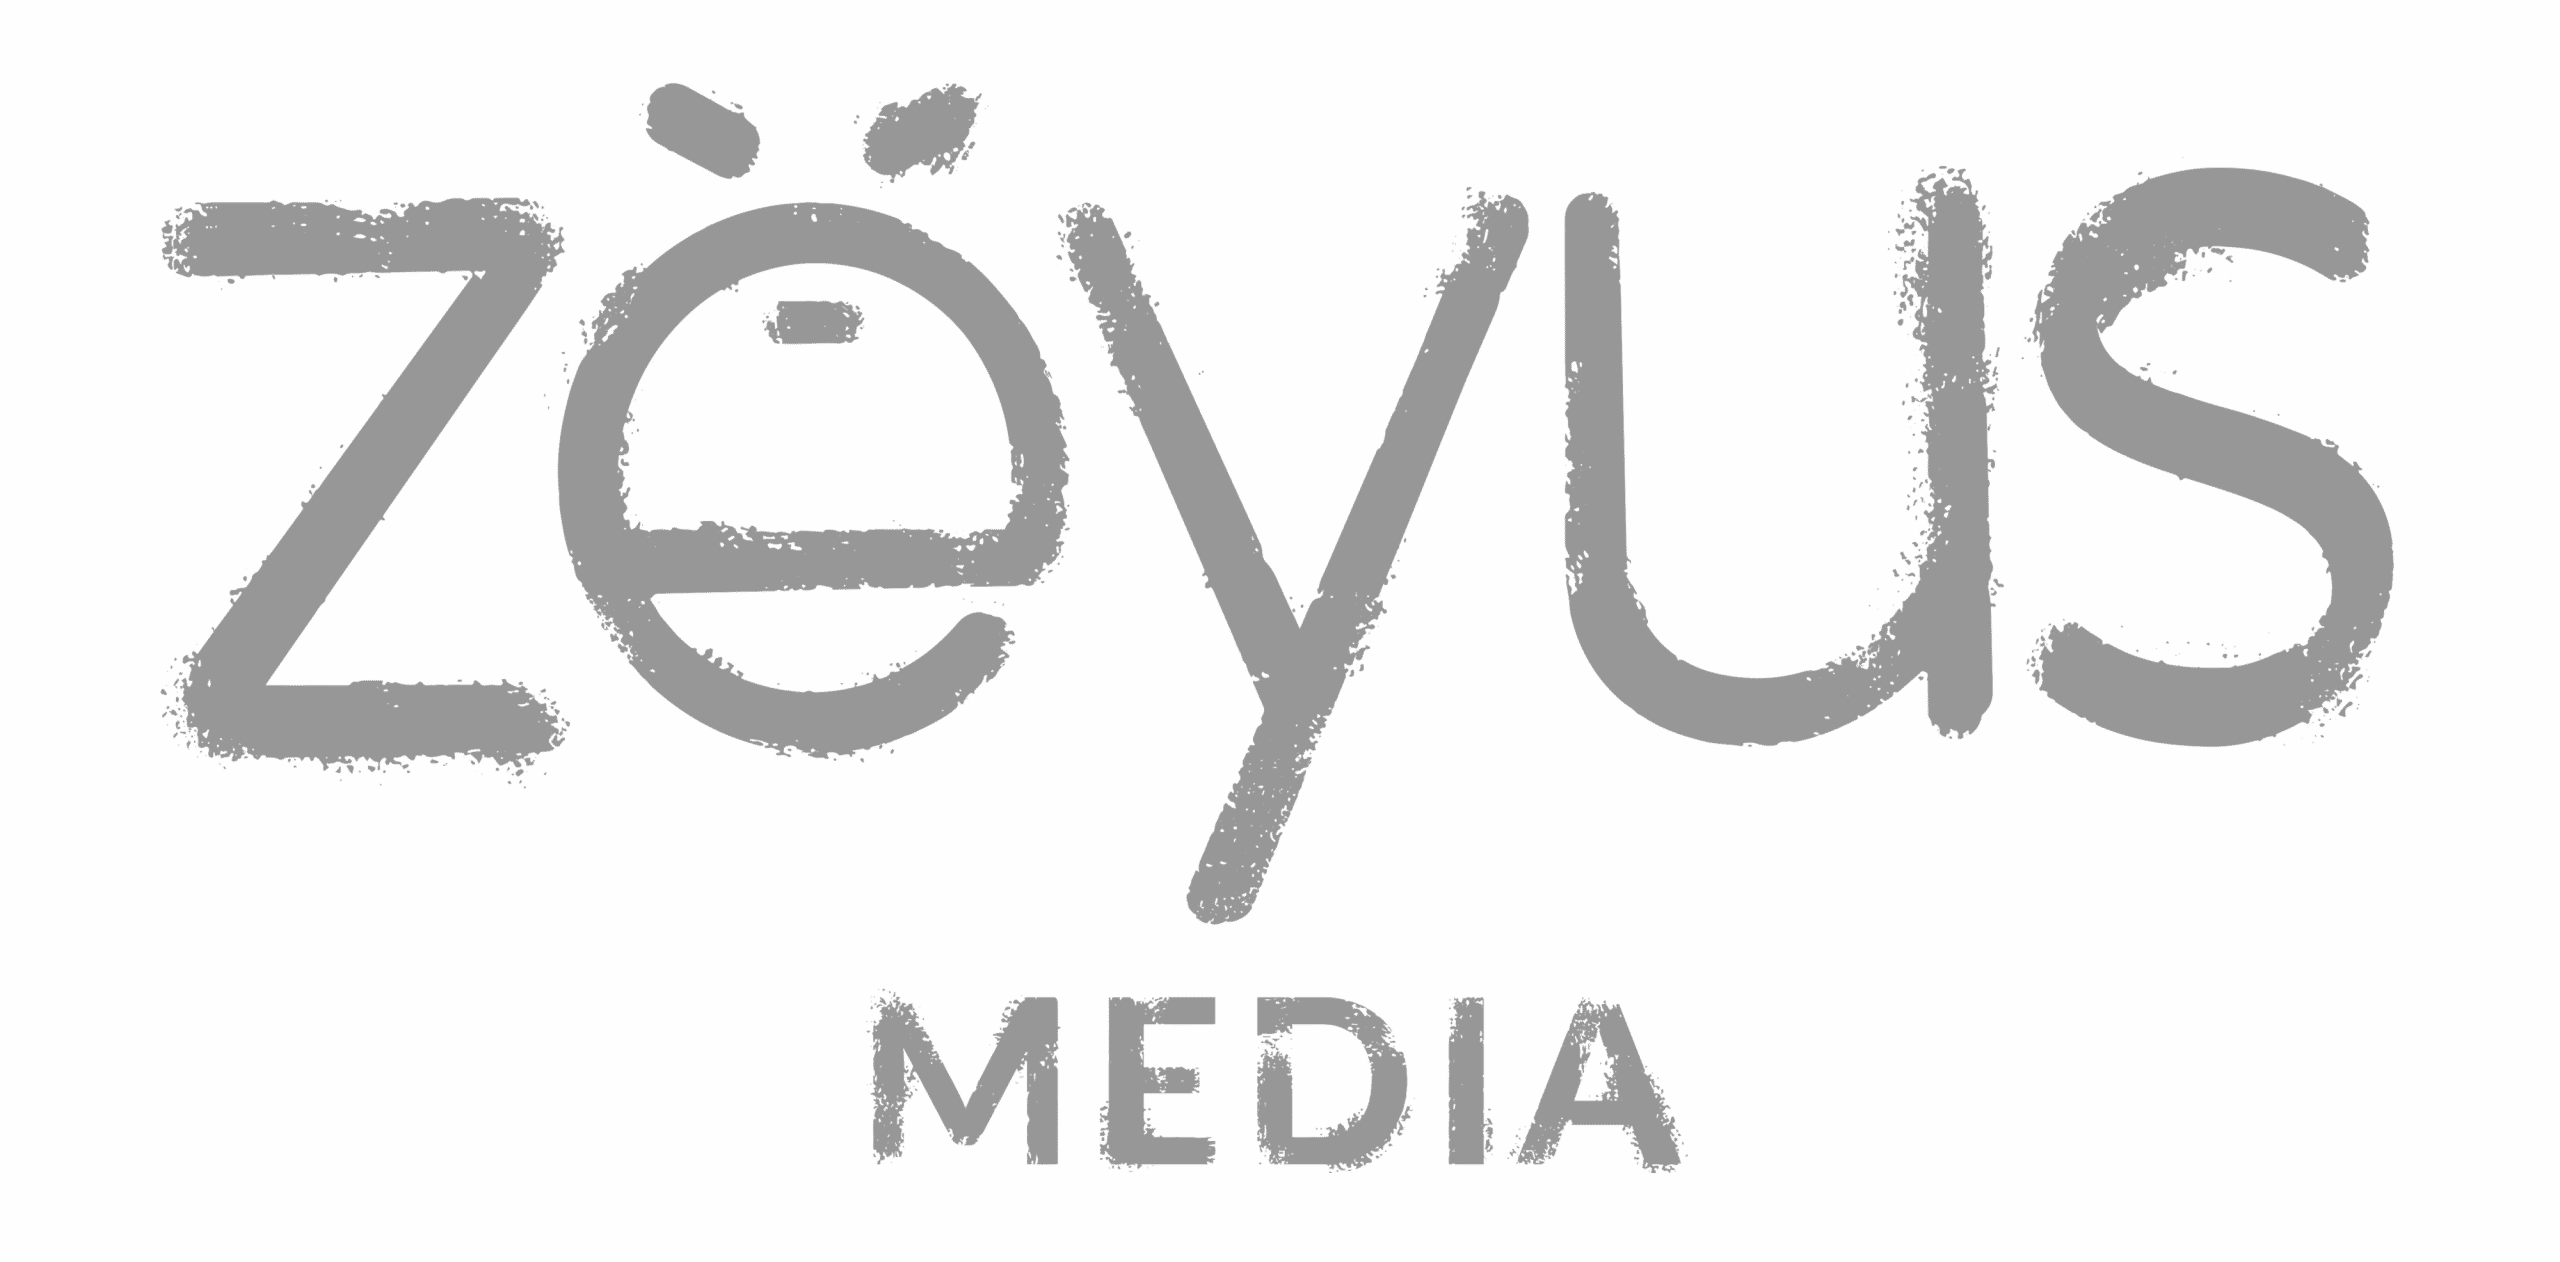 Zeyus logo